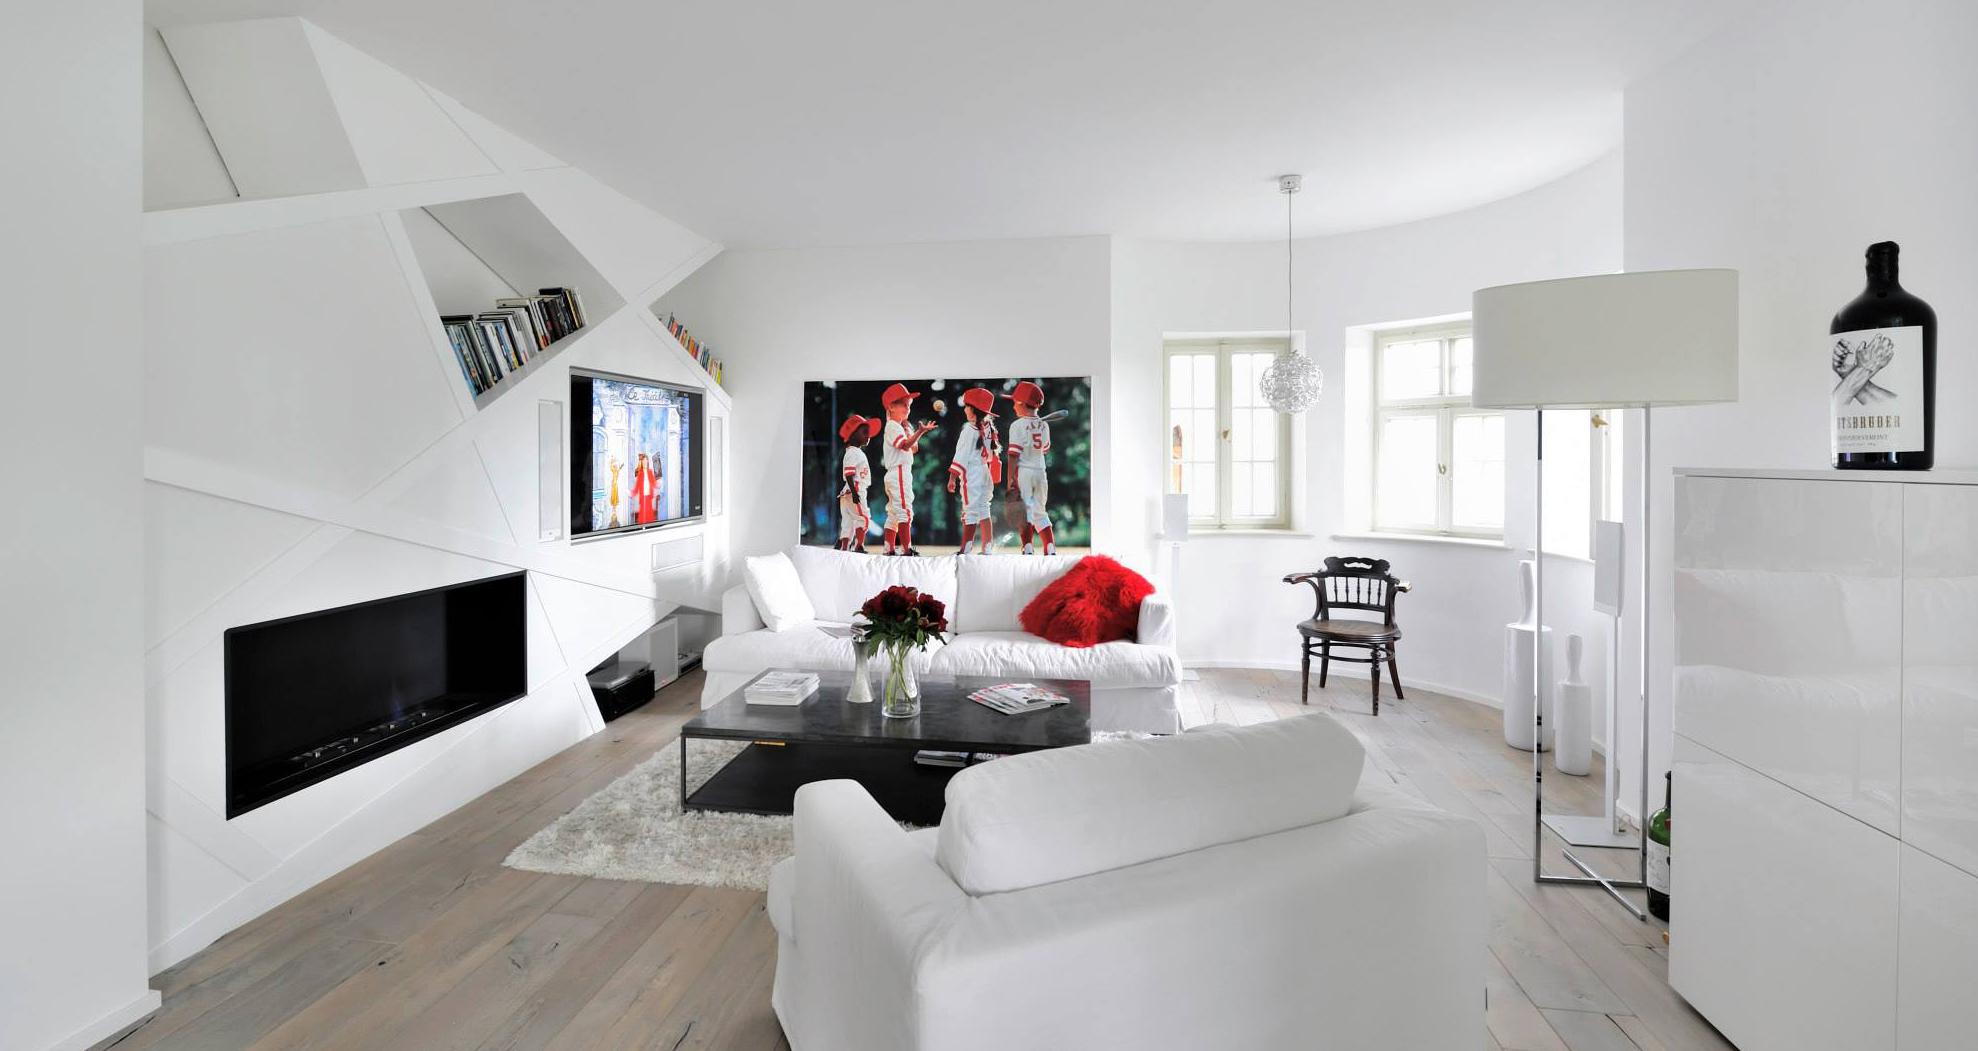 Gartenwohnung in Schäftlarn #bücherregal #wohnzimmer #sofa ©Heerwagen Design Consulting